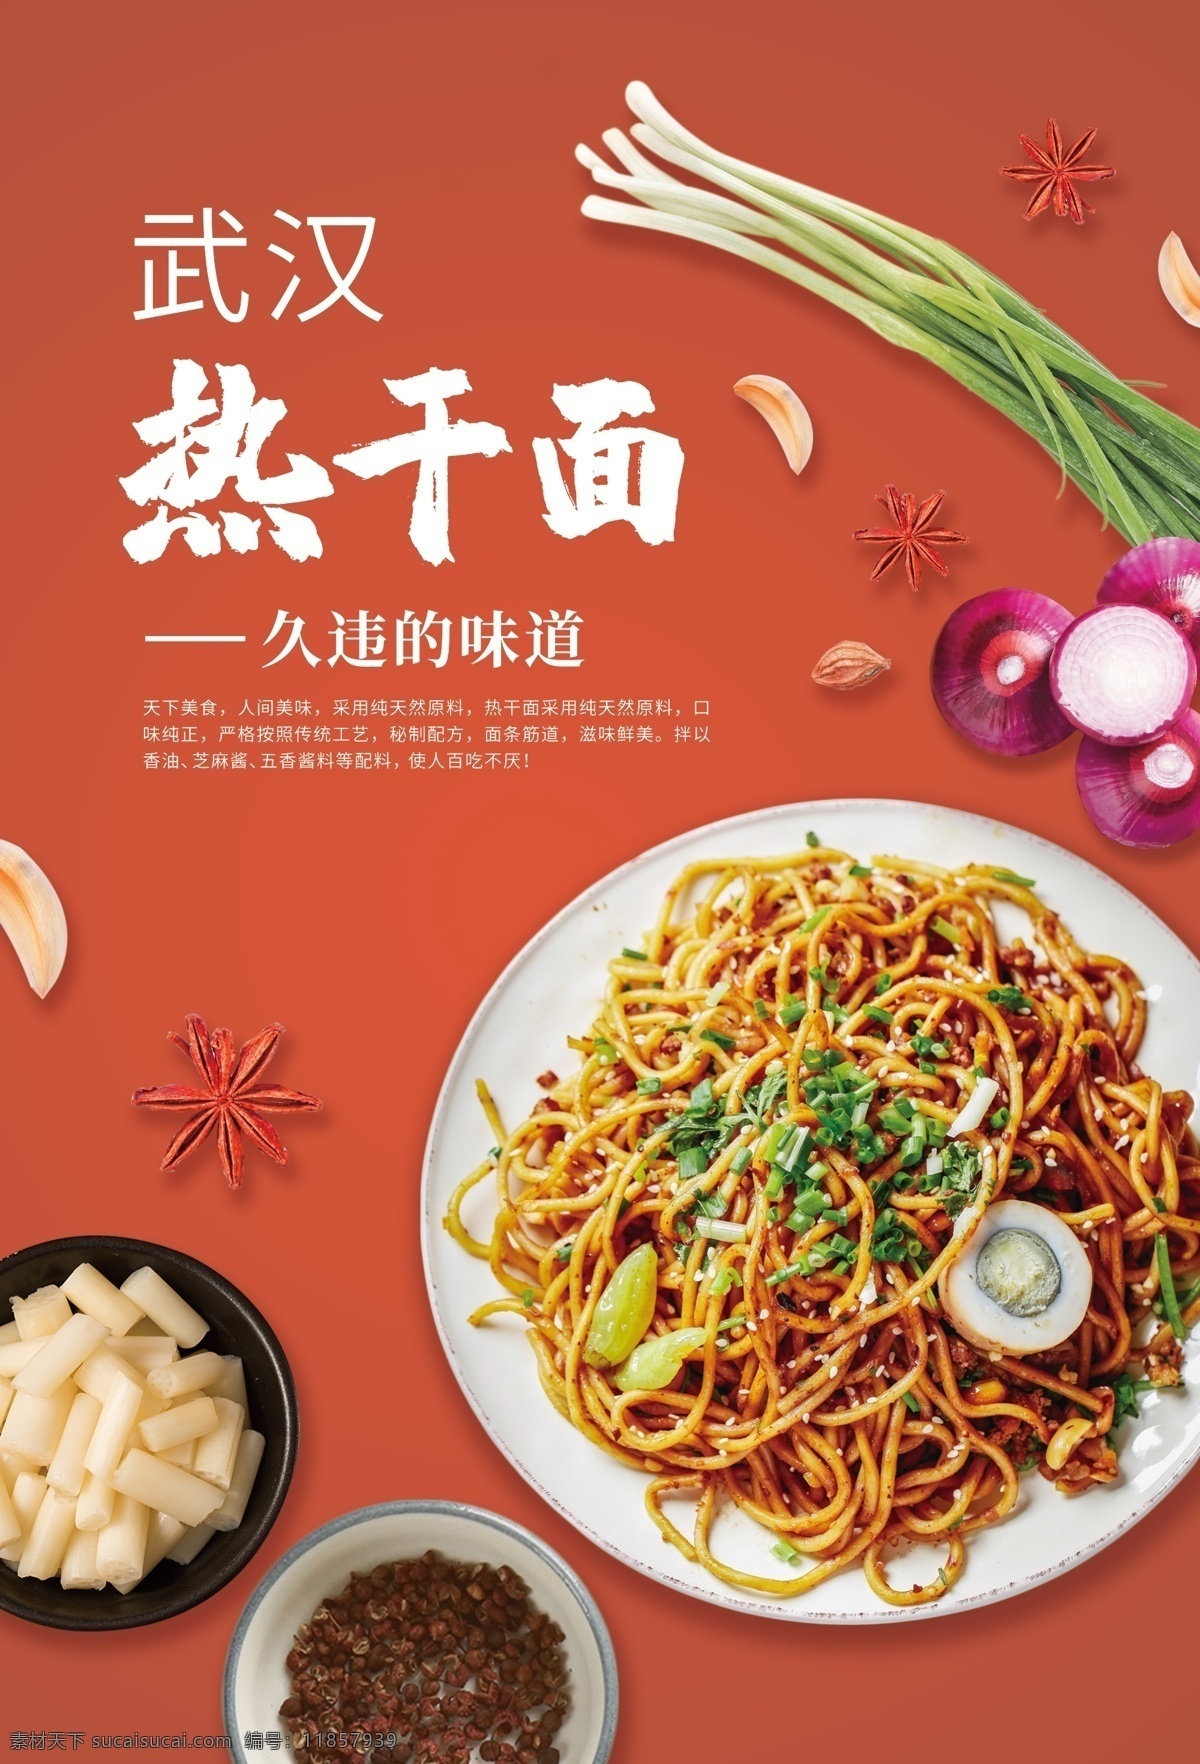 武汉 热 干面 美食 宣传 活动 海报 武汉热干面 餐饮美食 类